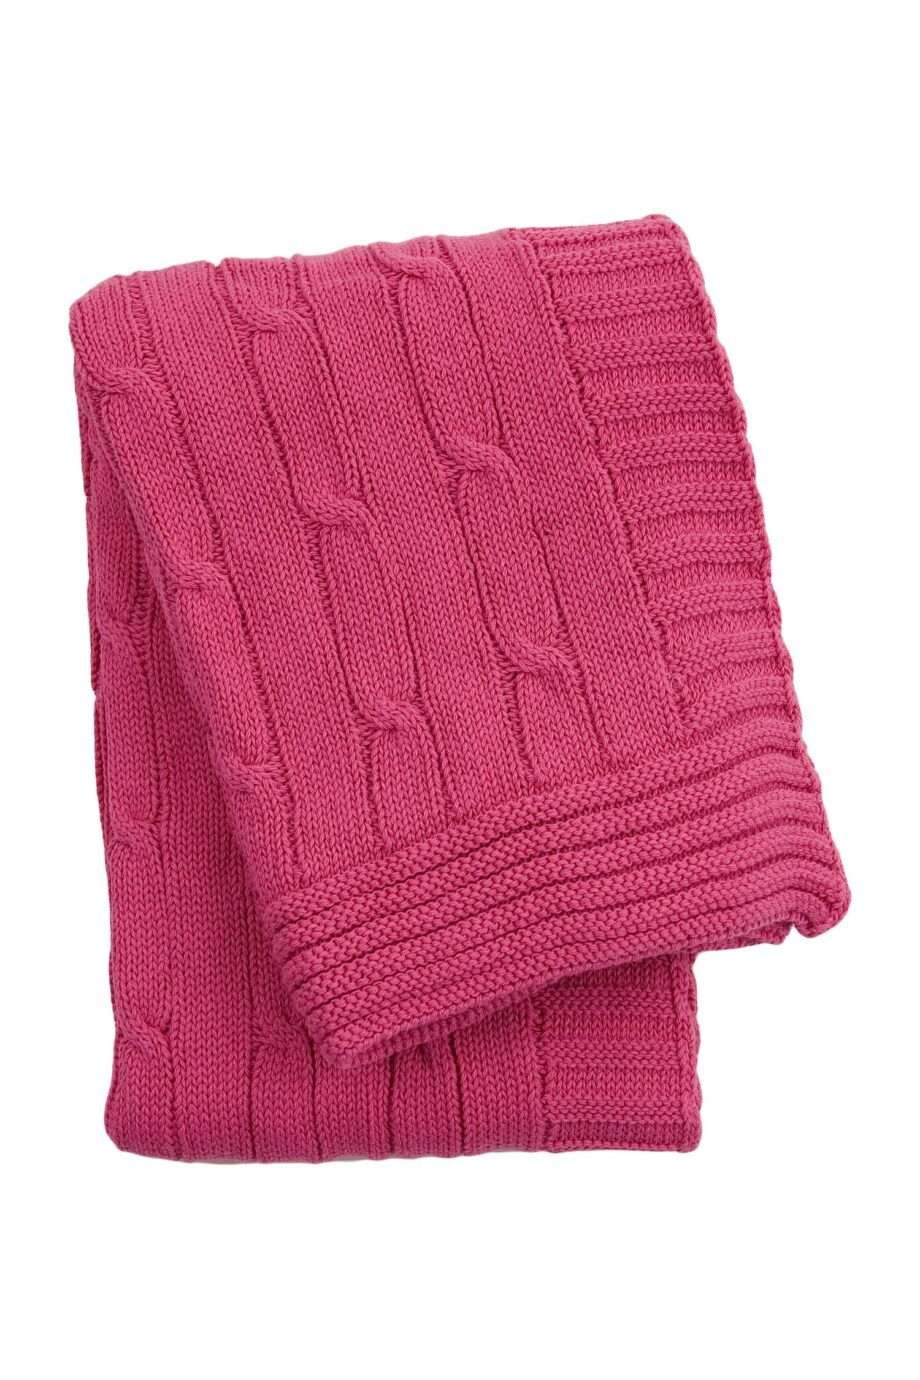 twist pink knitted cotton little blanket medium